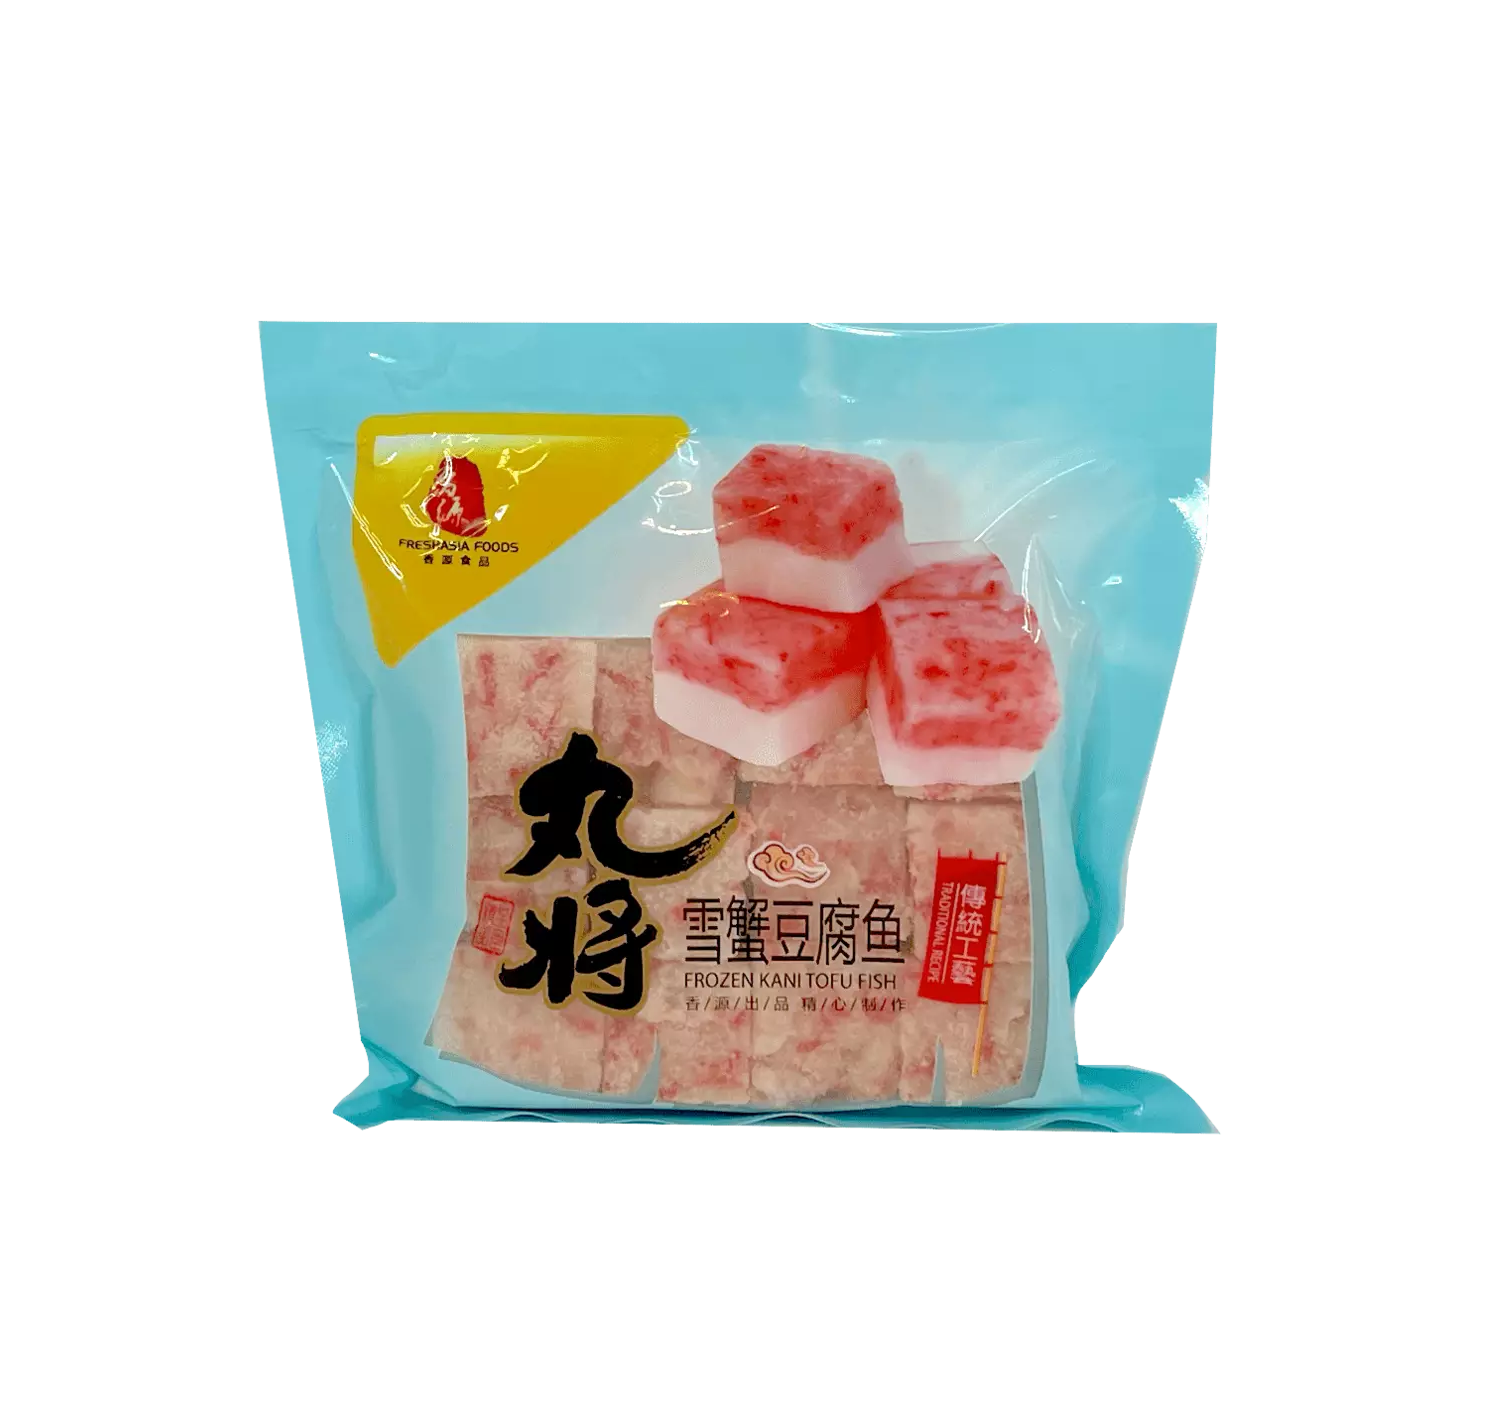 Snow Crab Imitation / Tofu Fish Fryst 200g WJ Freshasia Kina